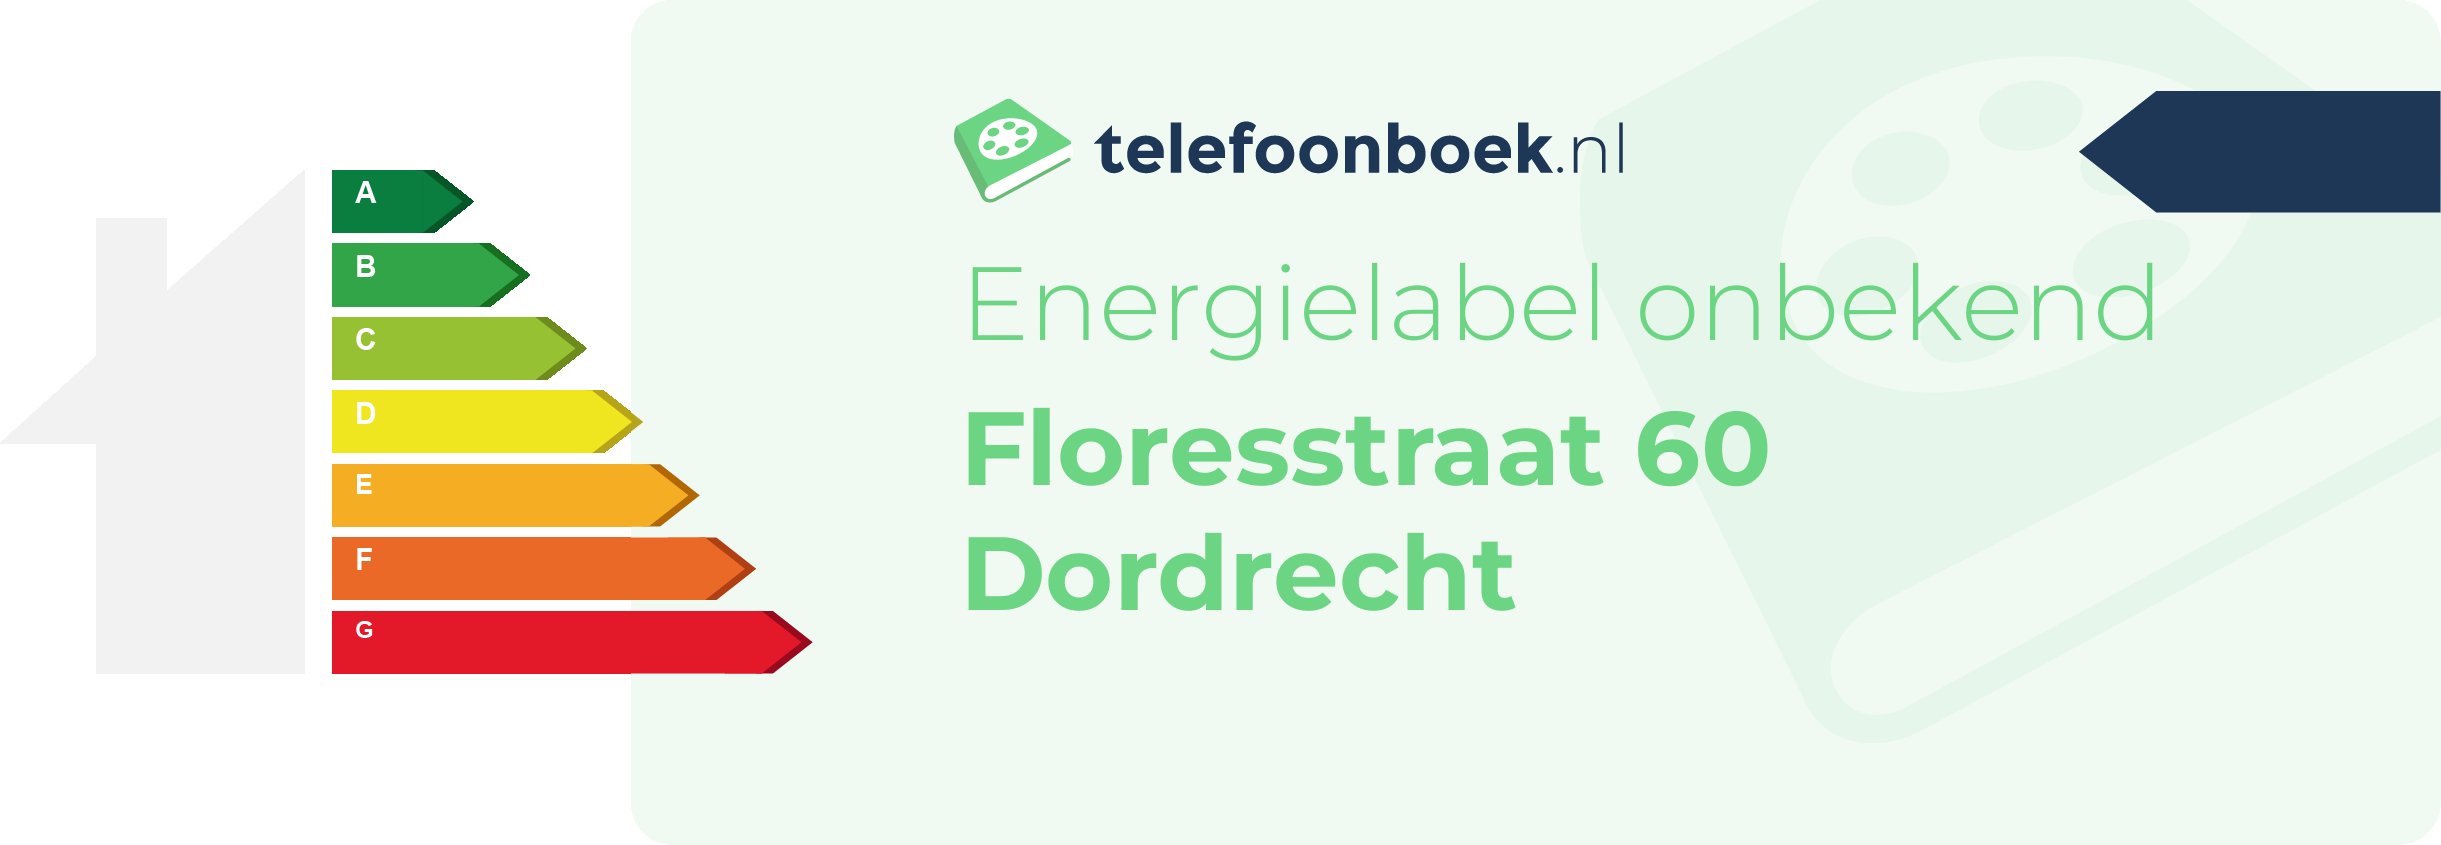 Energielabel Floresstraat 60 Dordrecht